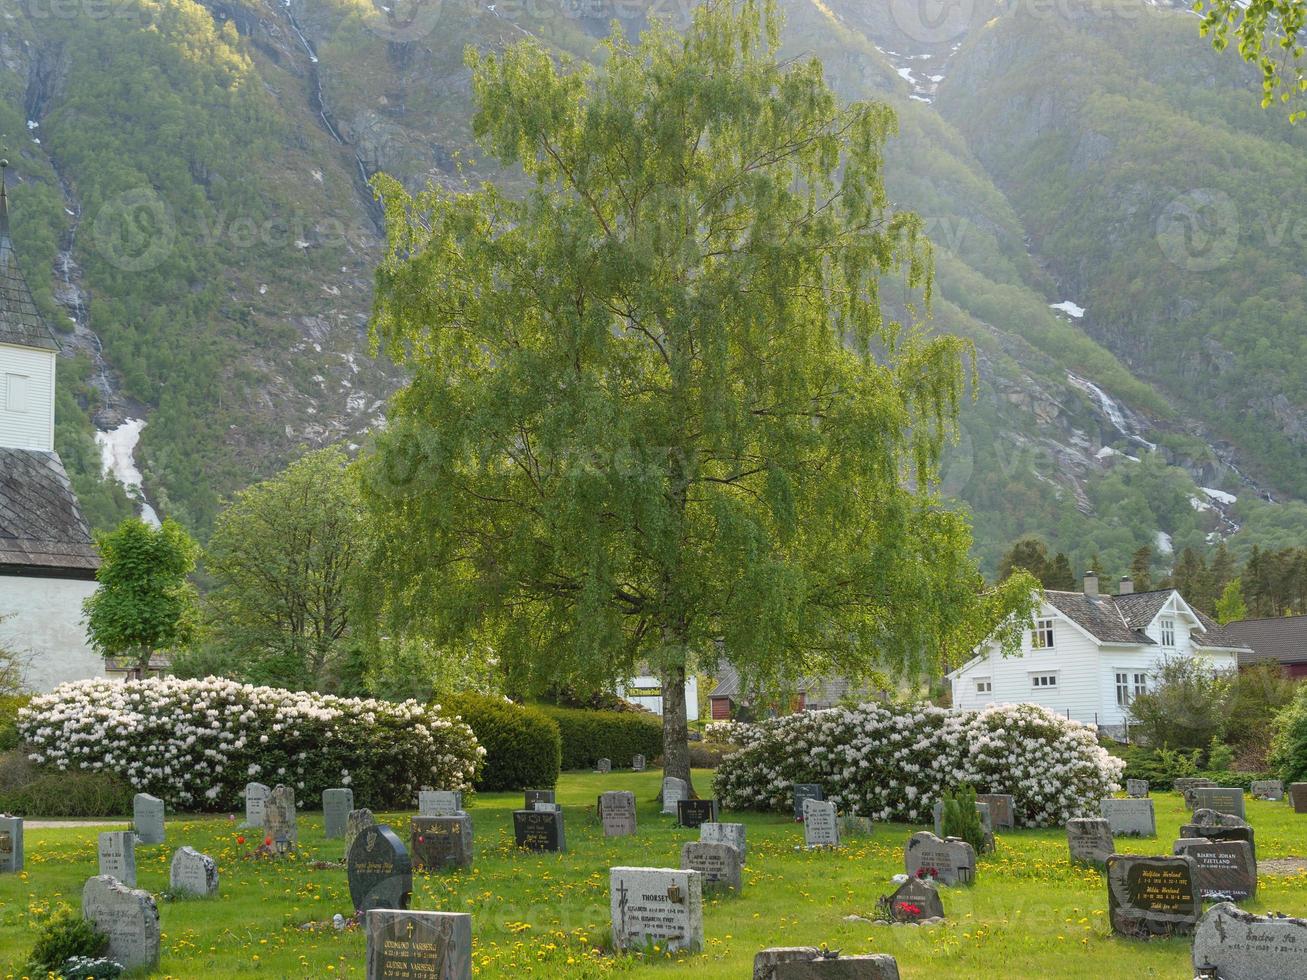 il piccolo villaggio eidfjord nell'hardangerfjord norvegese foto